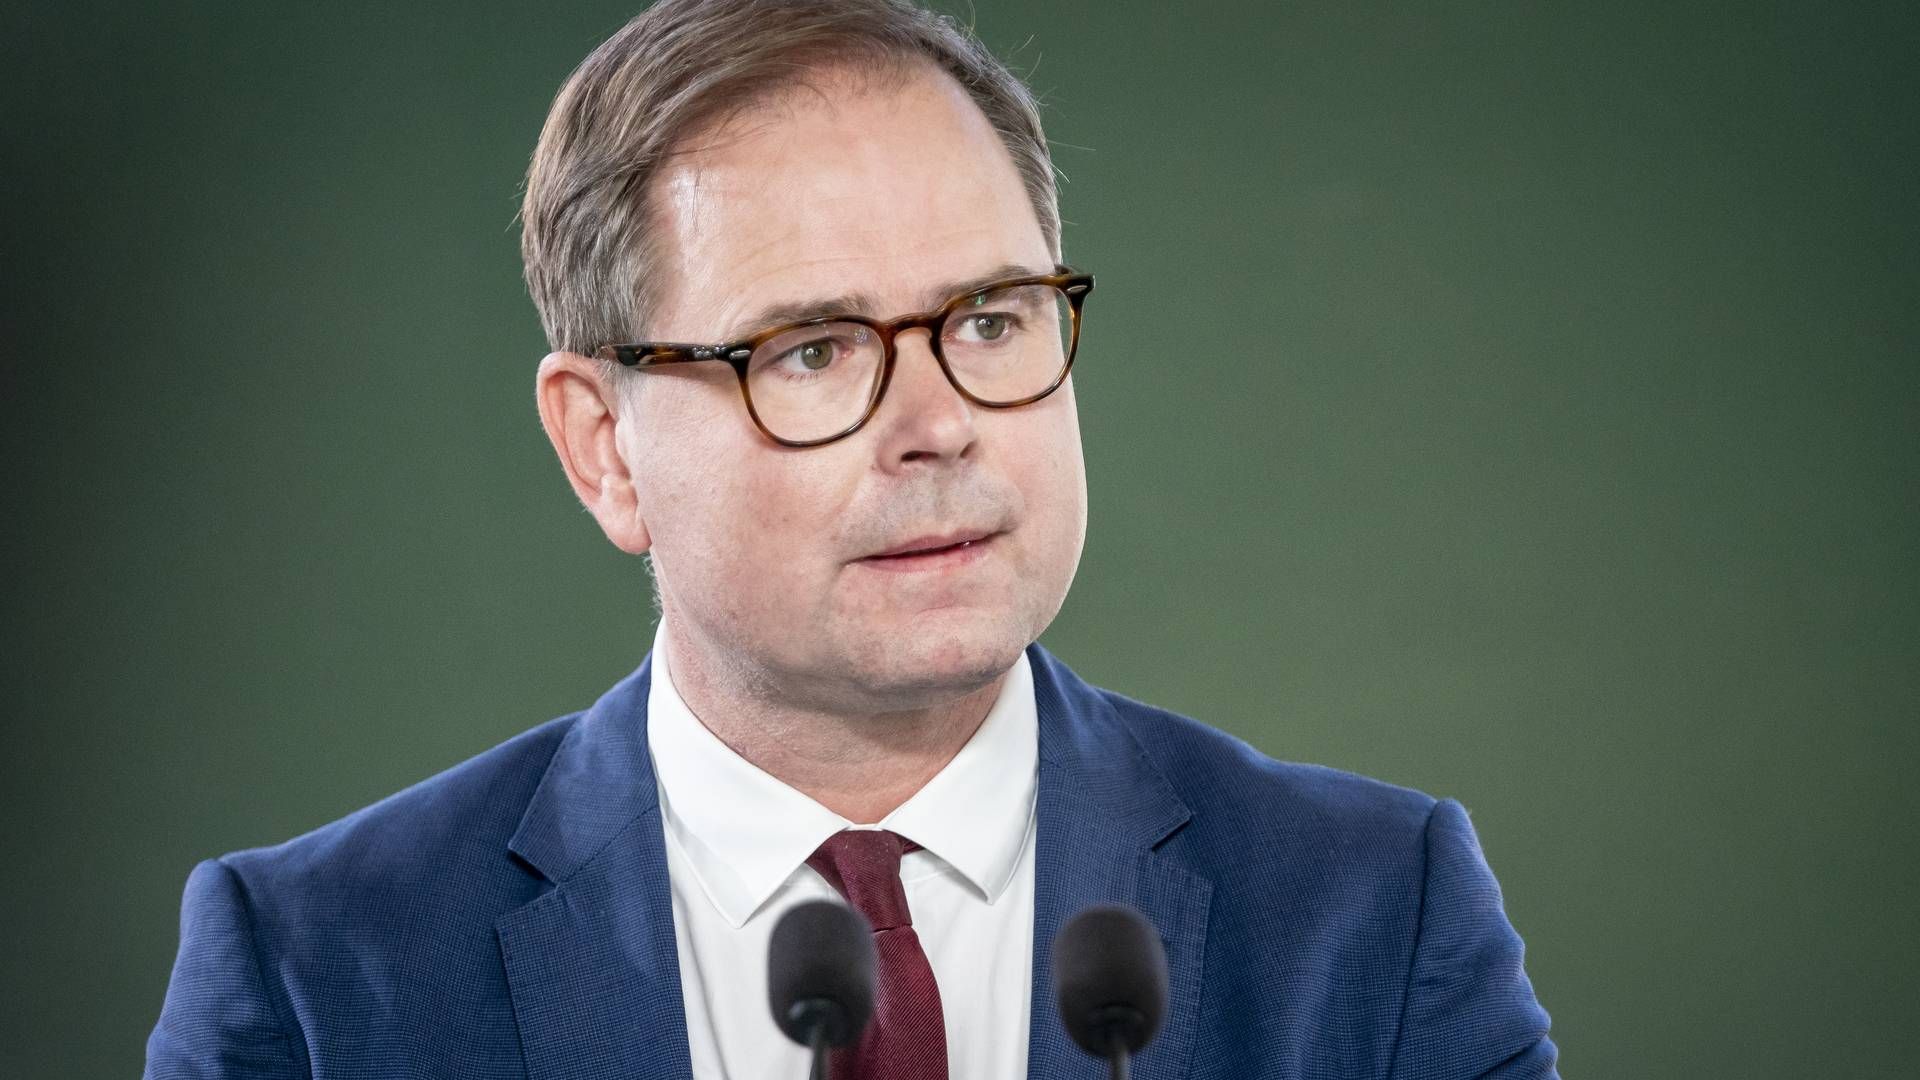 Med i finanslovsforslaget, som blev præsenteret af finansminister Nicolai Wammen, var oplæg til forhandlinger om den digitale strategi. | Foto: Mads Claus Rasmussen